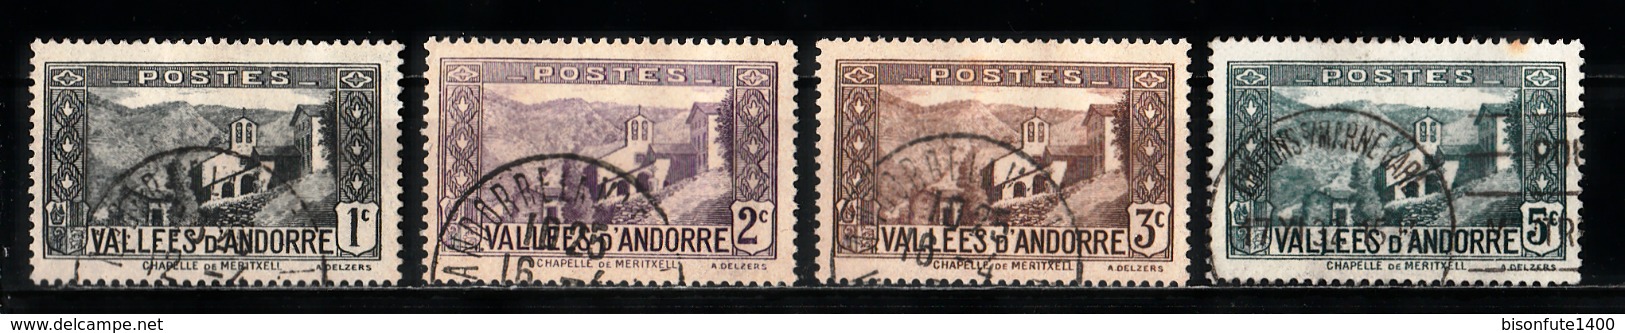 Andorre Français 1932 - 1933 : Timbres Yvert & Tellier N° 24 - 25 - 26 - 27 - 28 - 29 - 30 - 31 - 32 - 33 - 34 - 35 - .. - Oblitérés